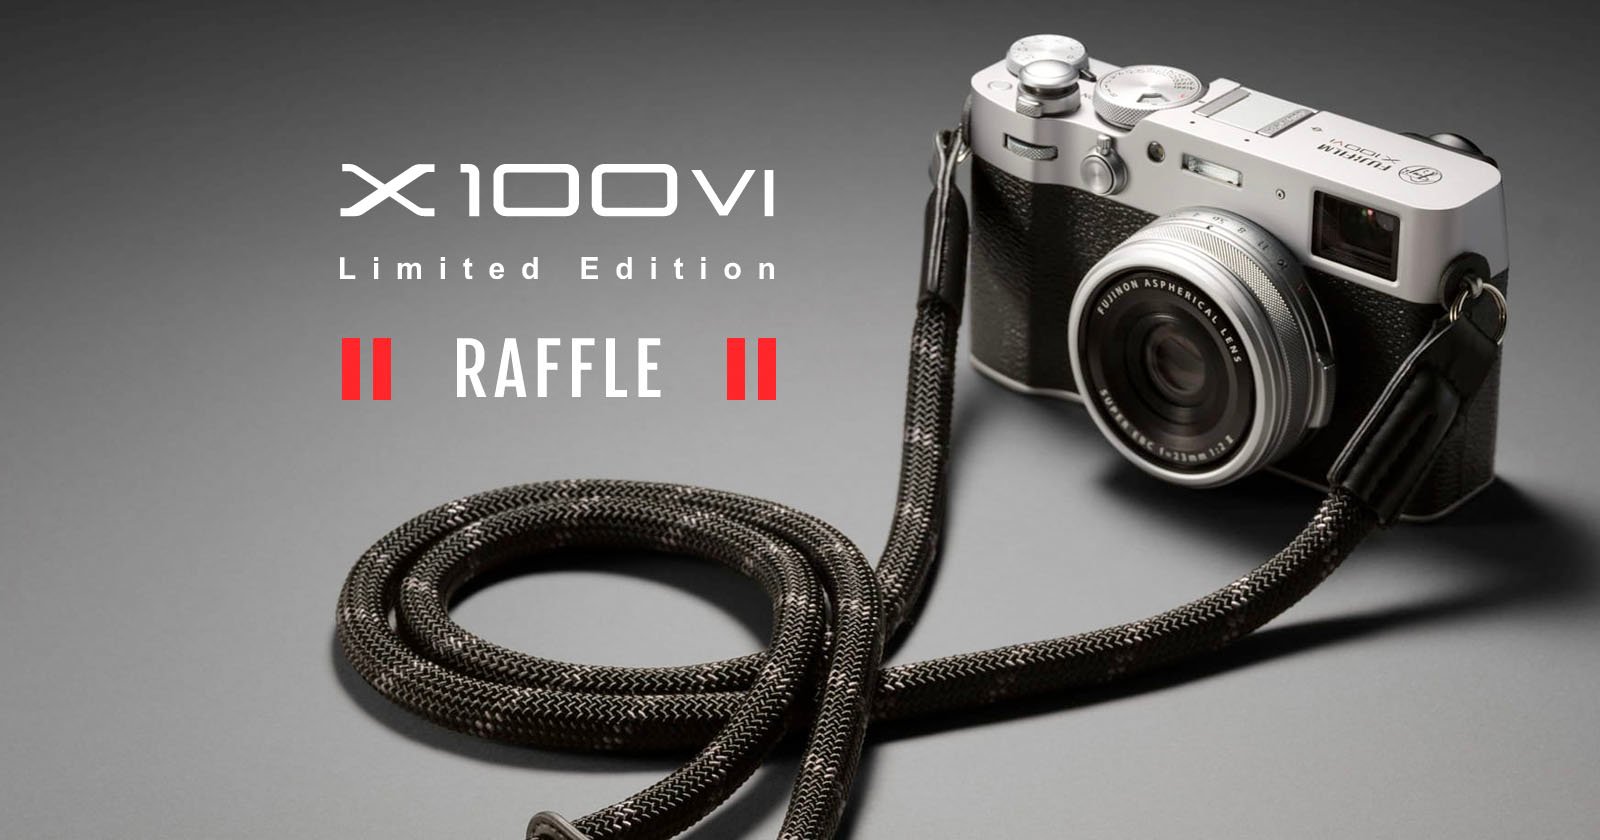 A Fujifilm X100VI limited edition camera